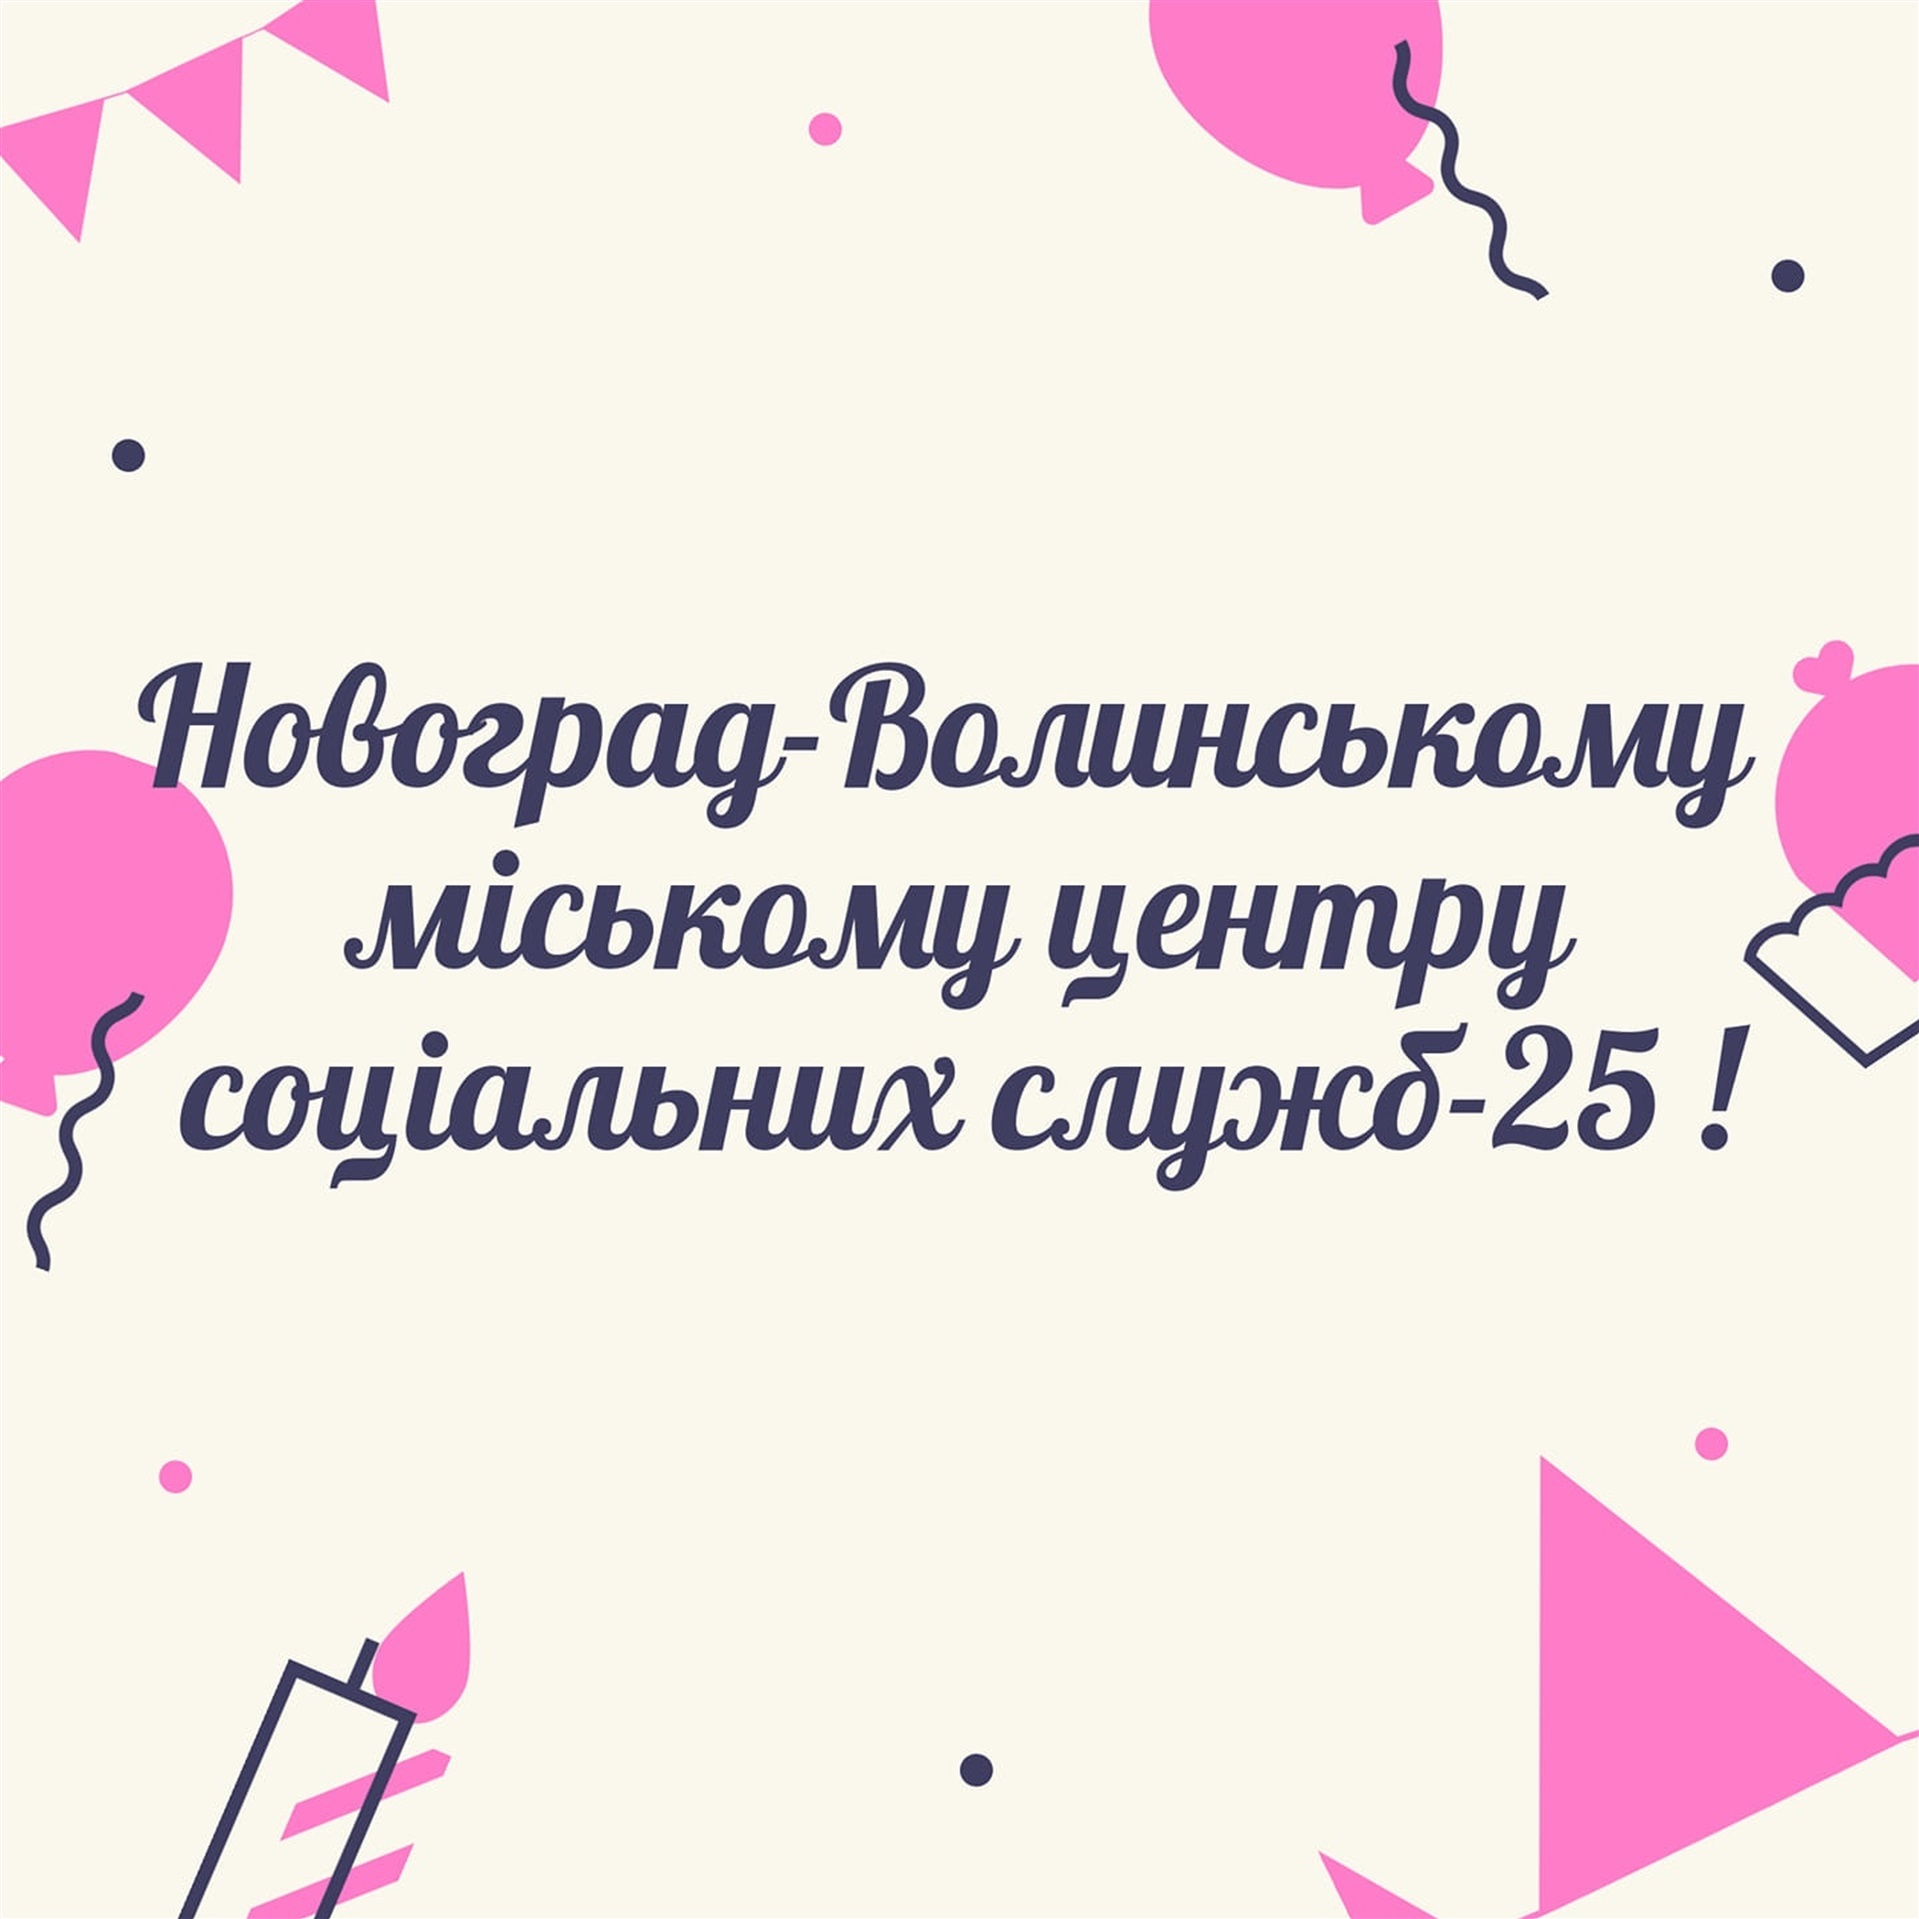 Новоград-Волинського міського центру соціальних служб 25 років!